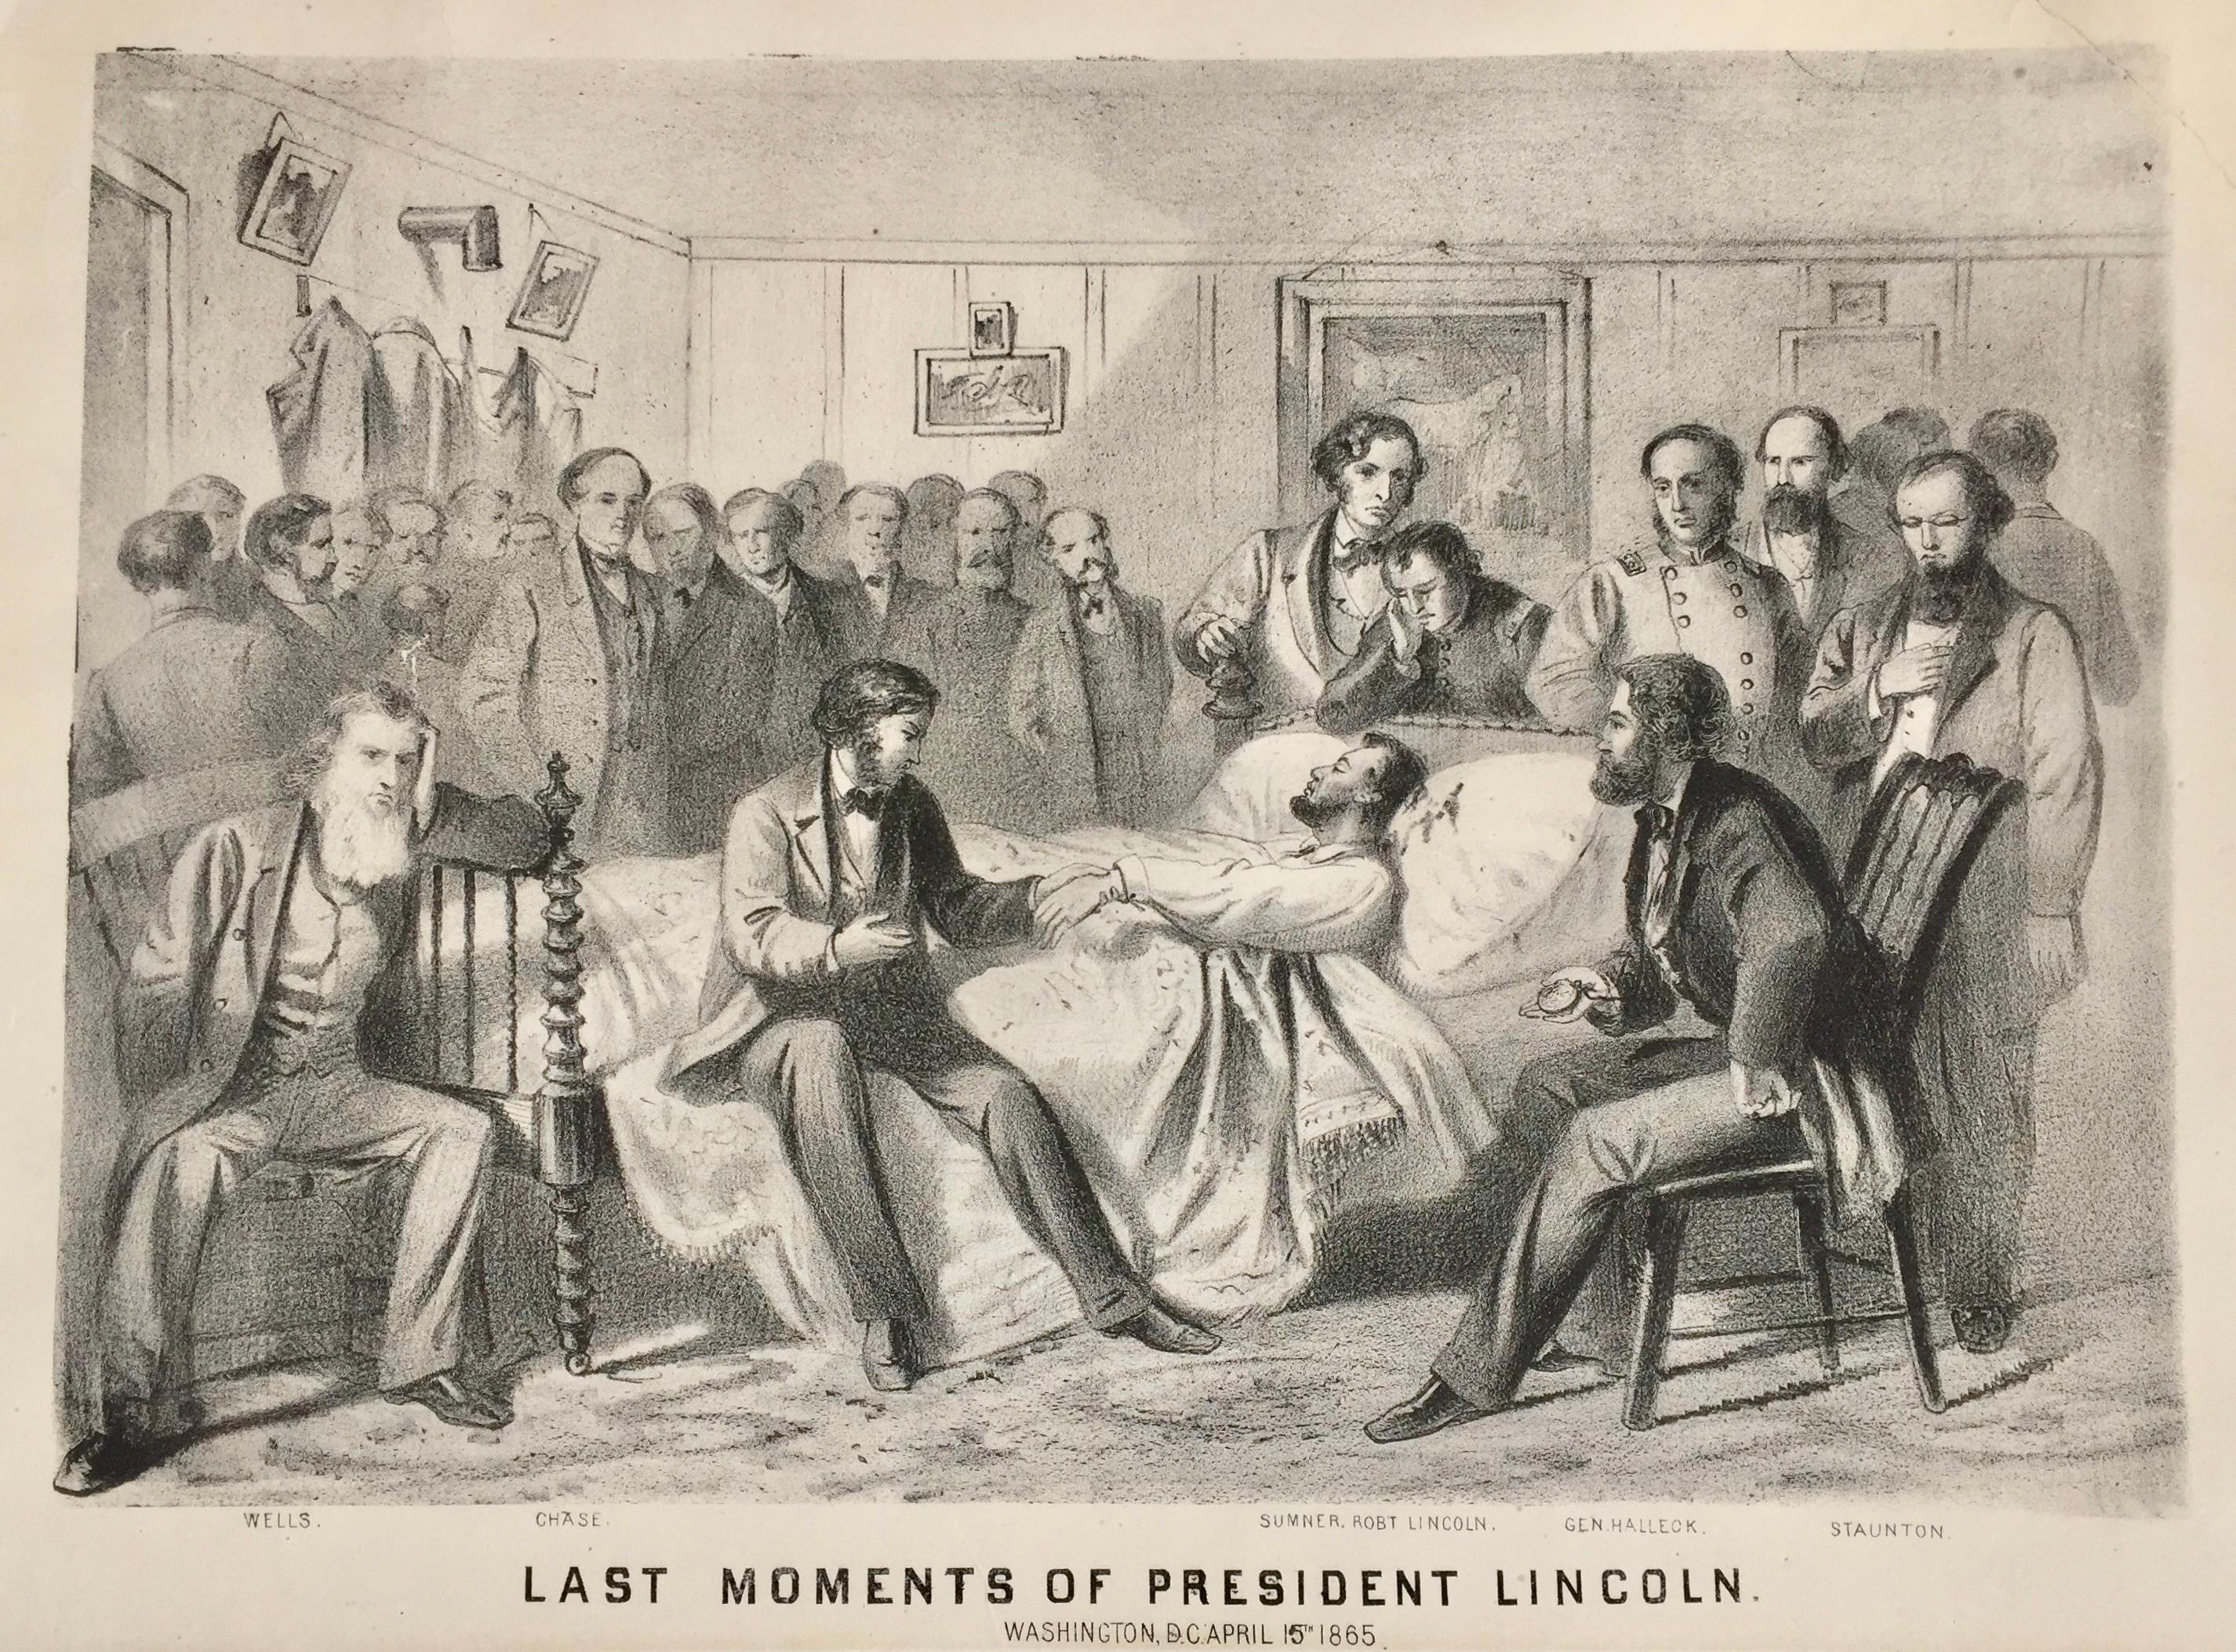 DIE LASTEN MOMENTEN DES Präsidenten LINCOLN